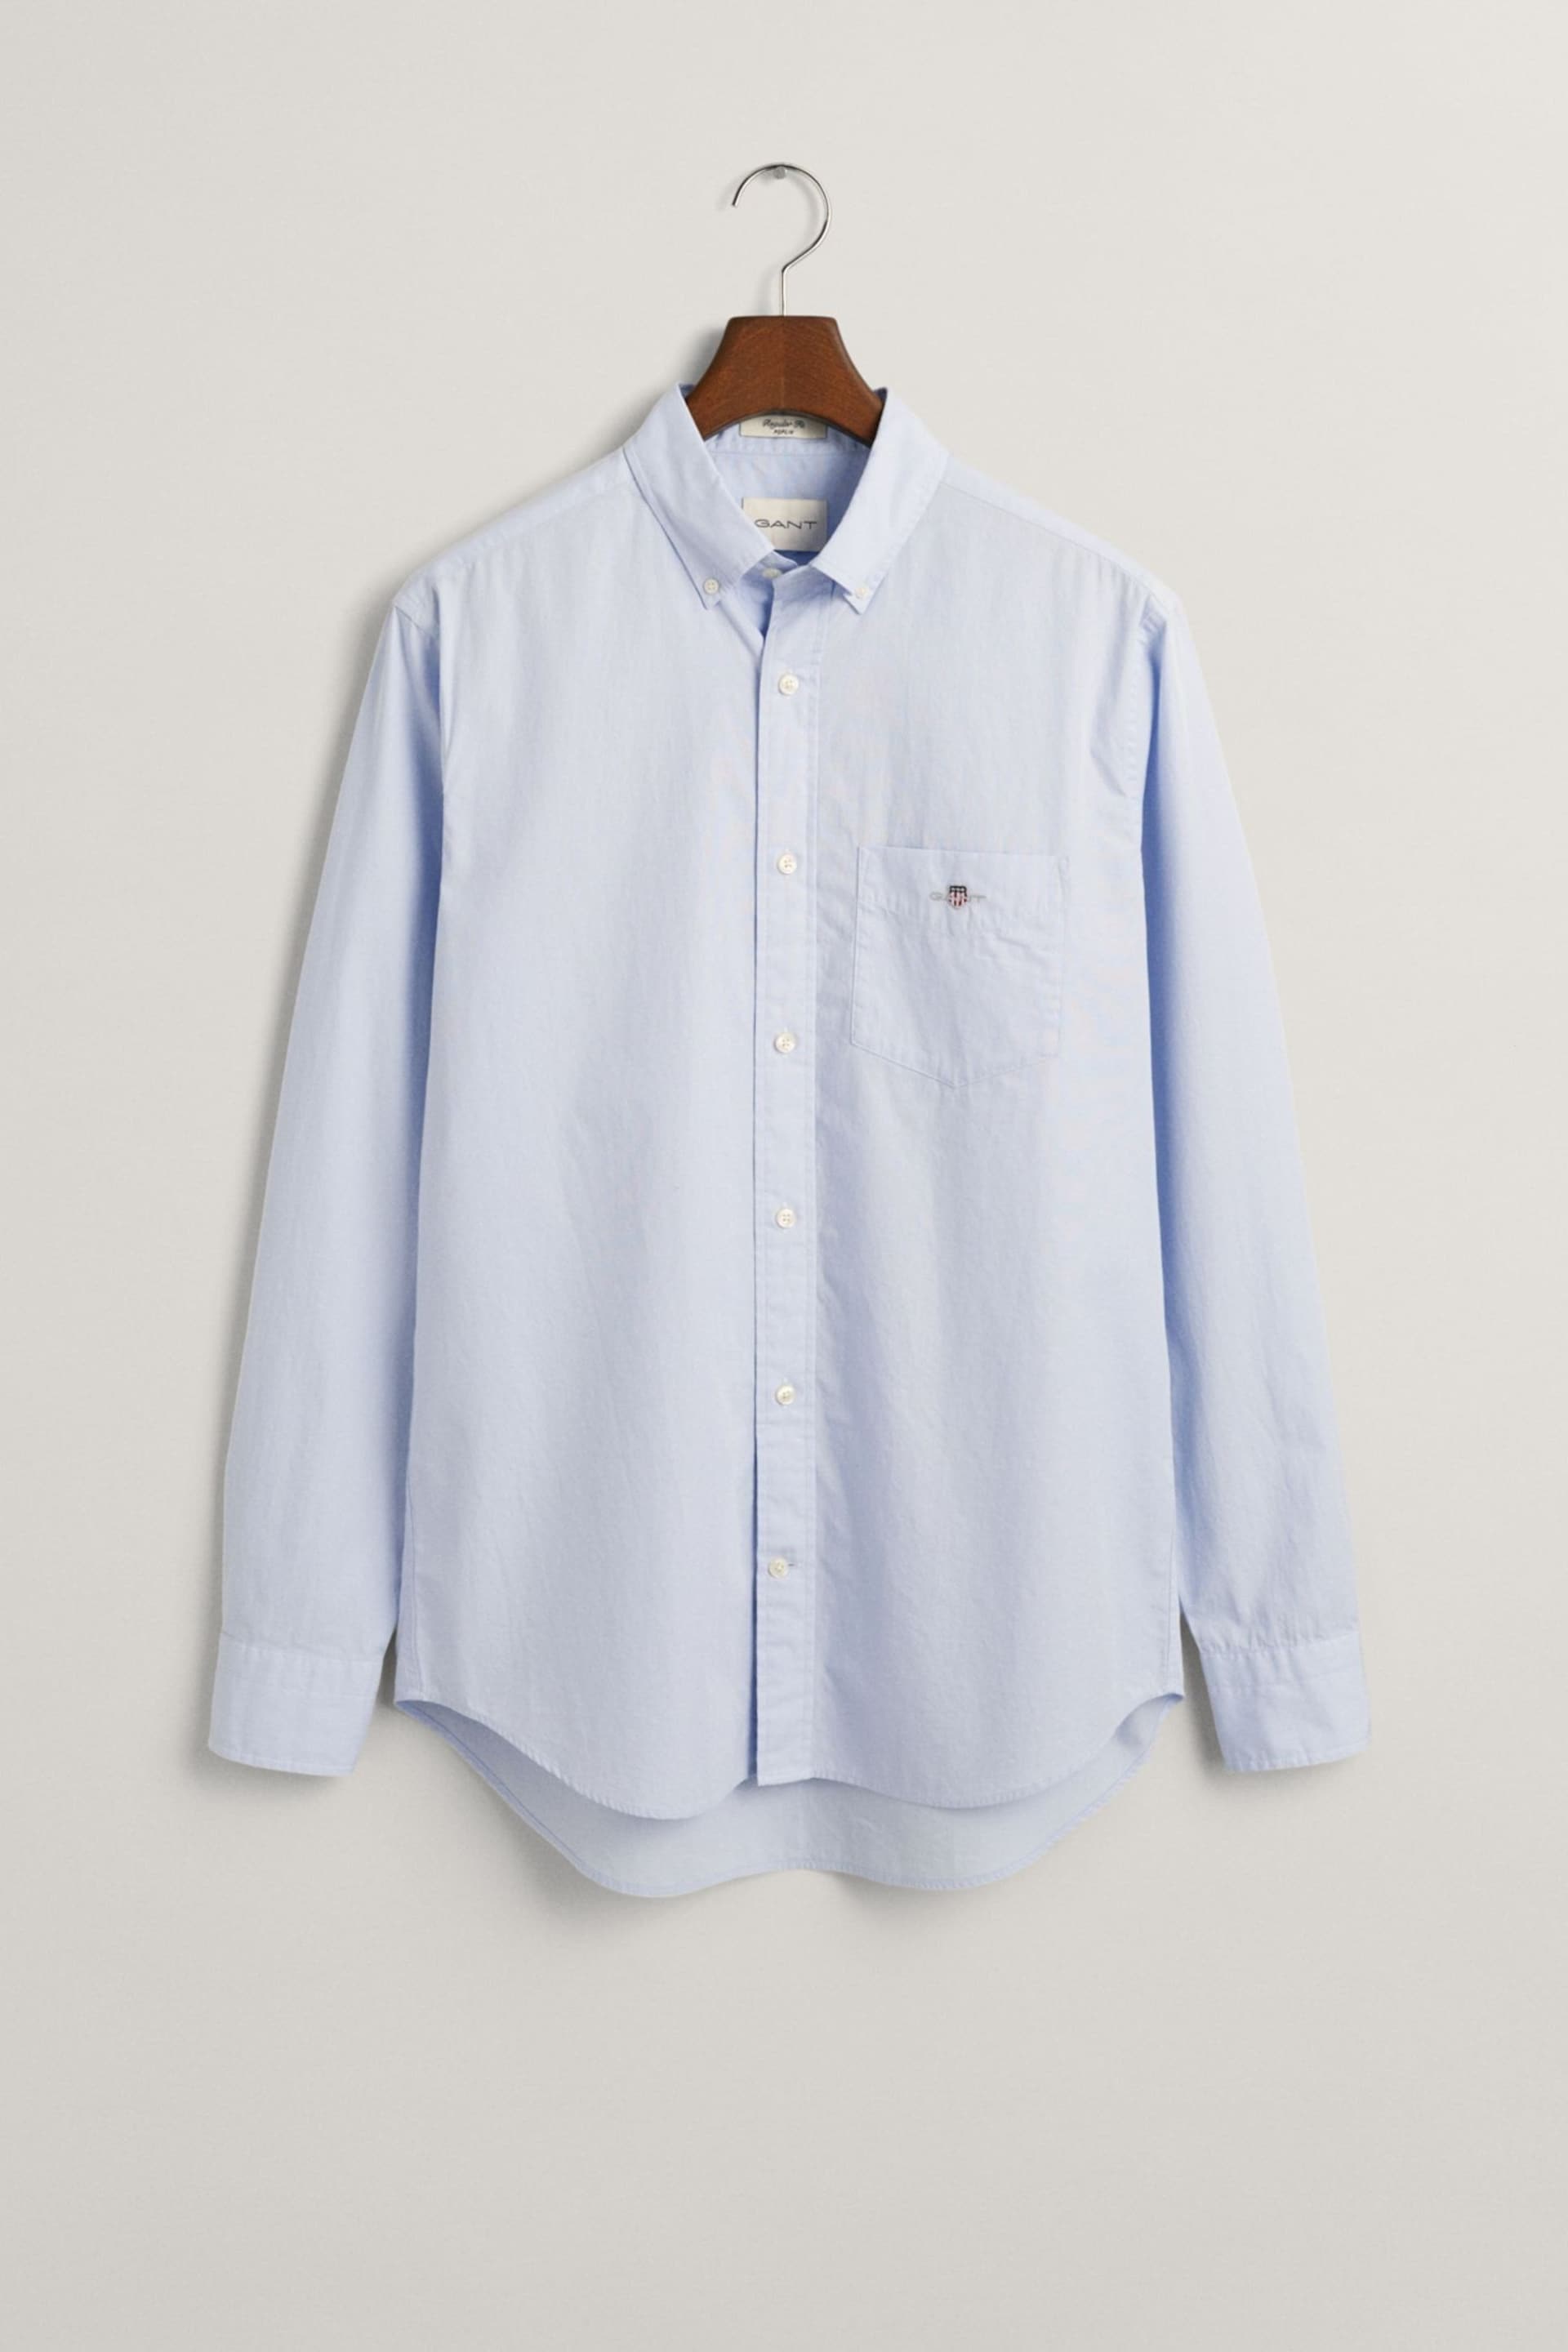 GANT Light Blue Regular Fit Poplin Shirt - Image 5 of 5